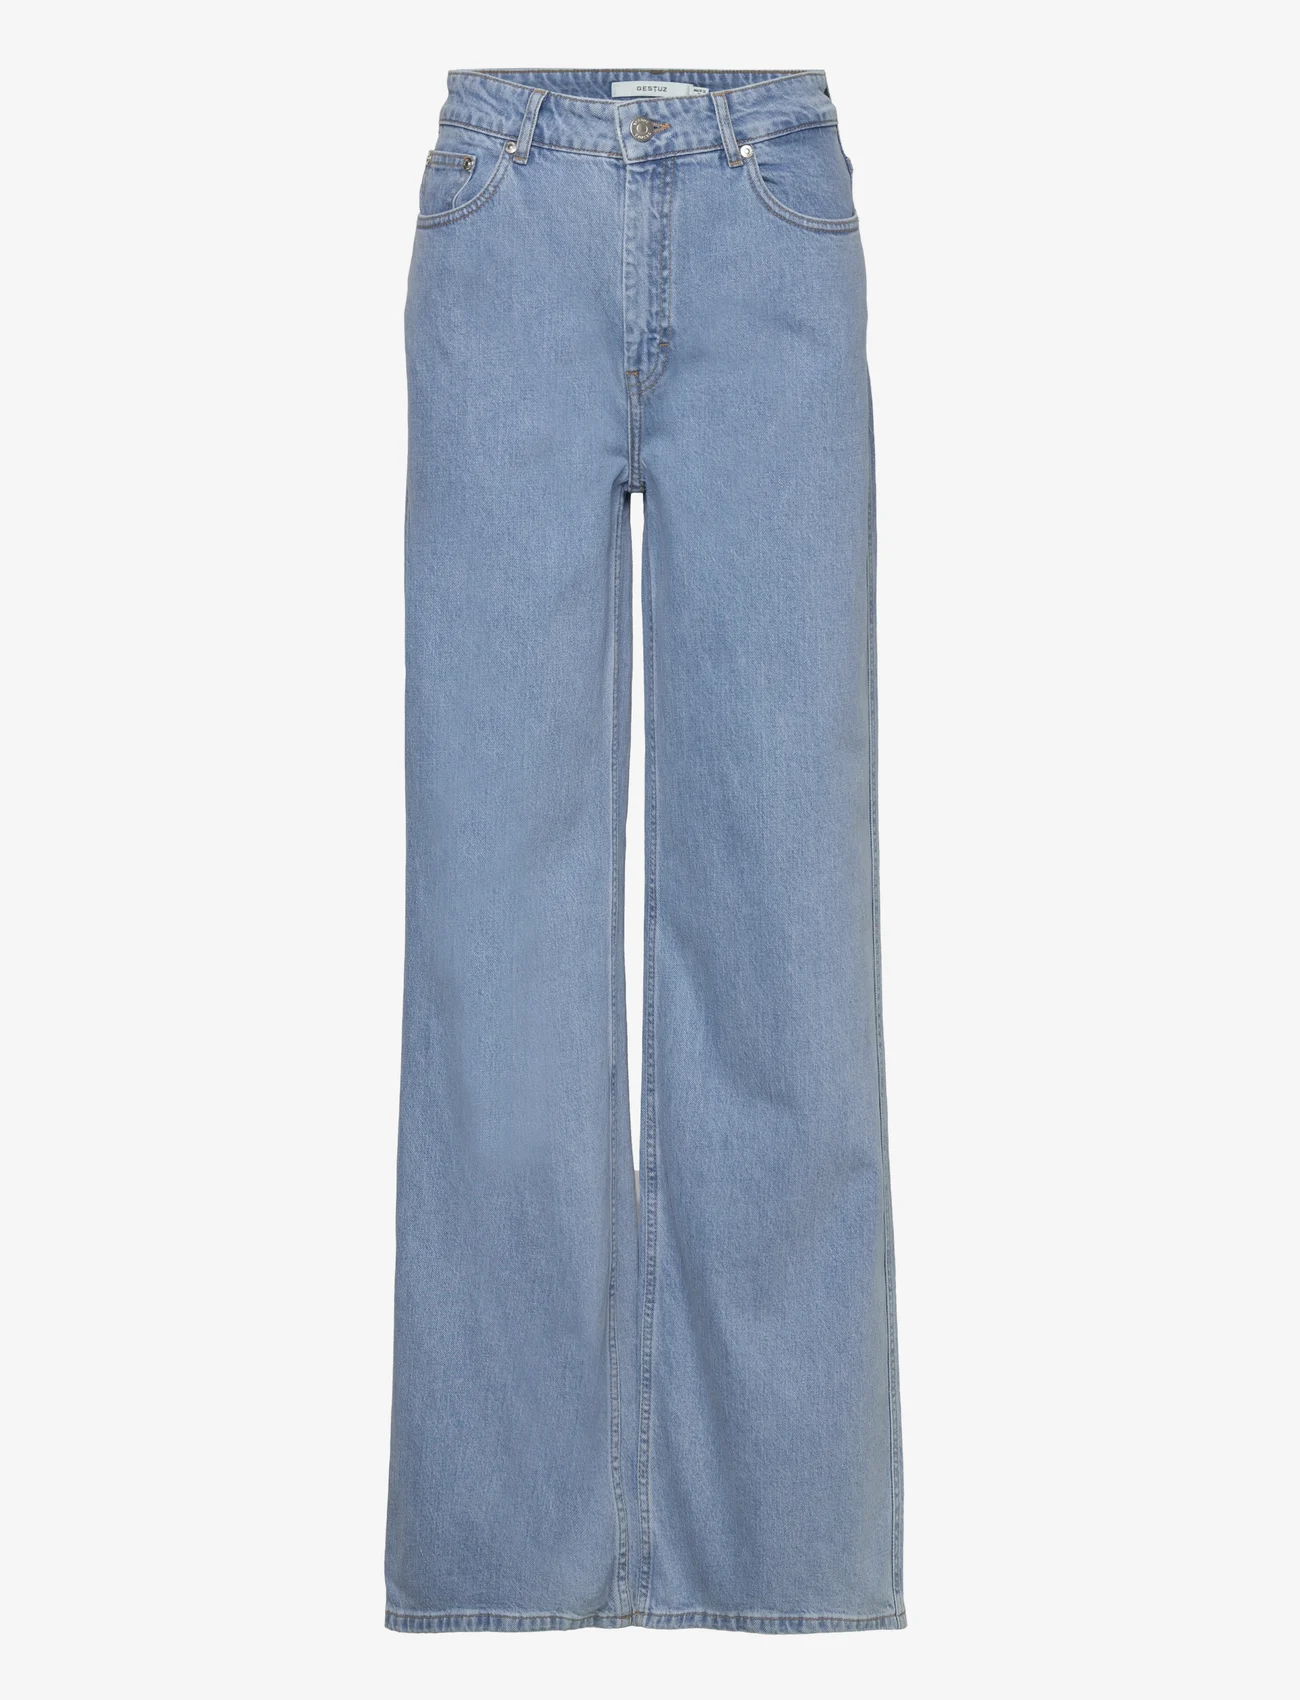 Gestuz - AuraGZ HW wide jeans NOOS - spodnie szerokie - mid blue washed - 0